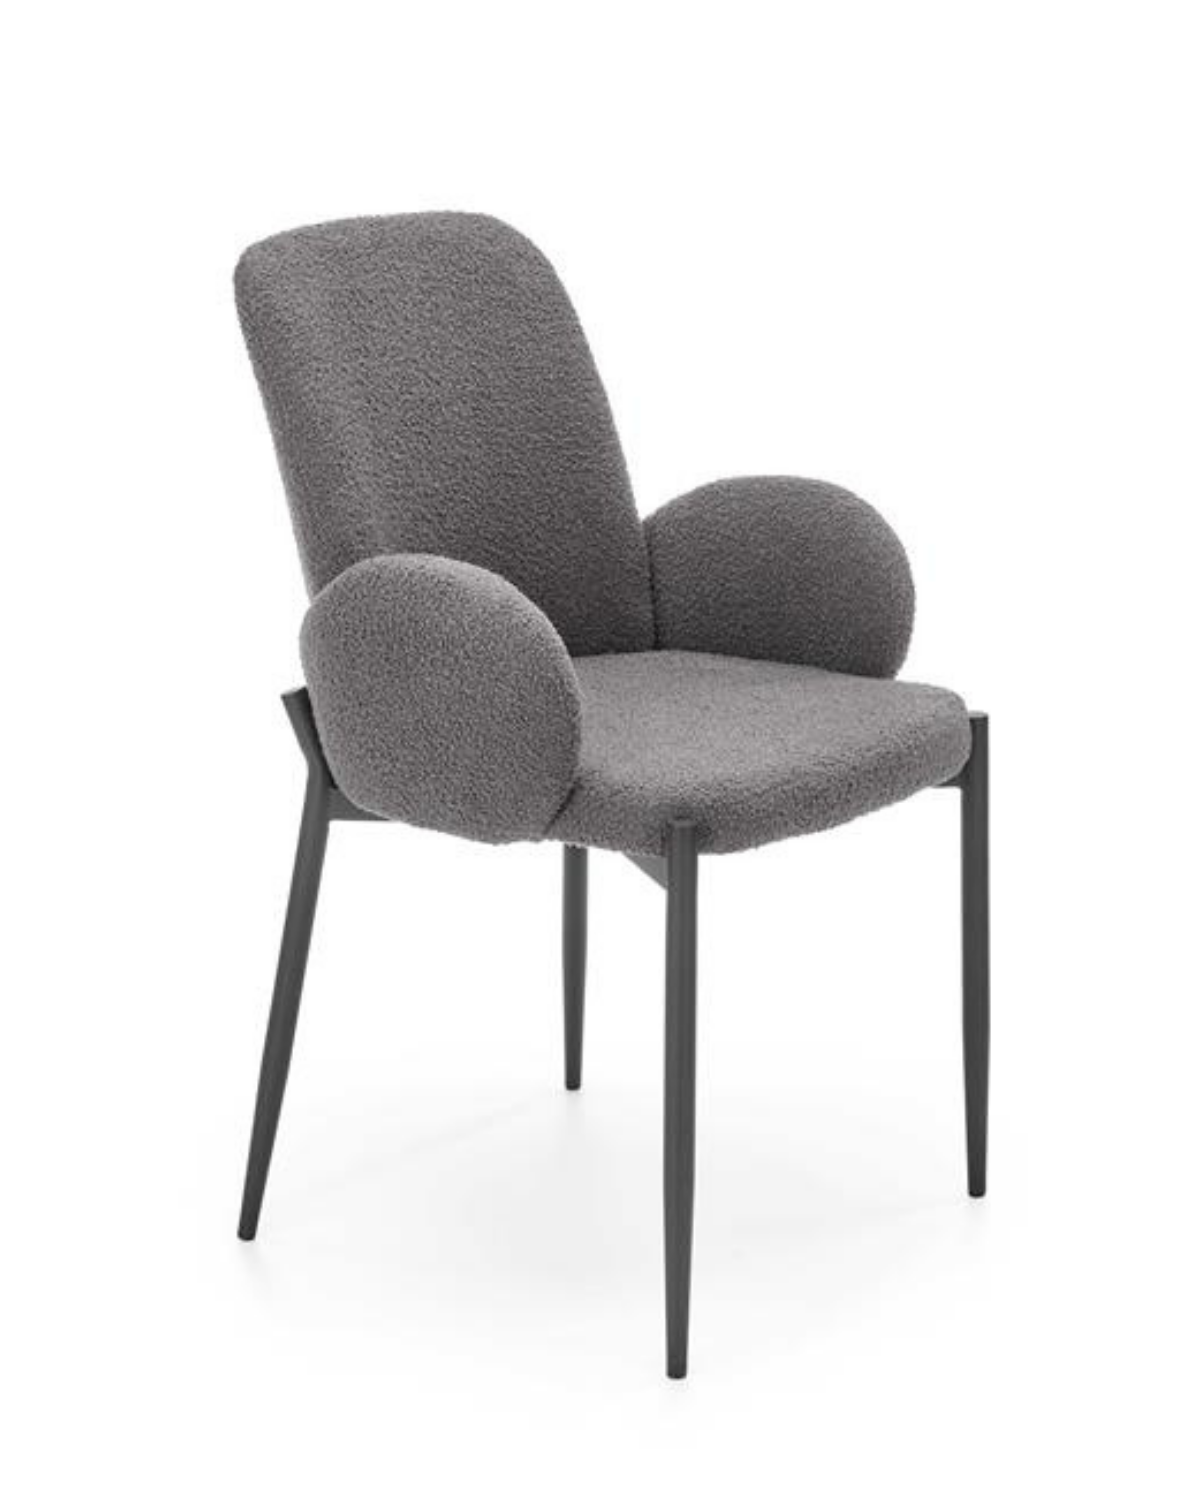 Opinie o Krzesło K477, krzesło boucle, krzesło baranek